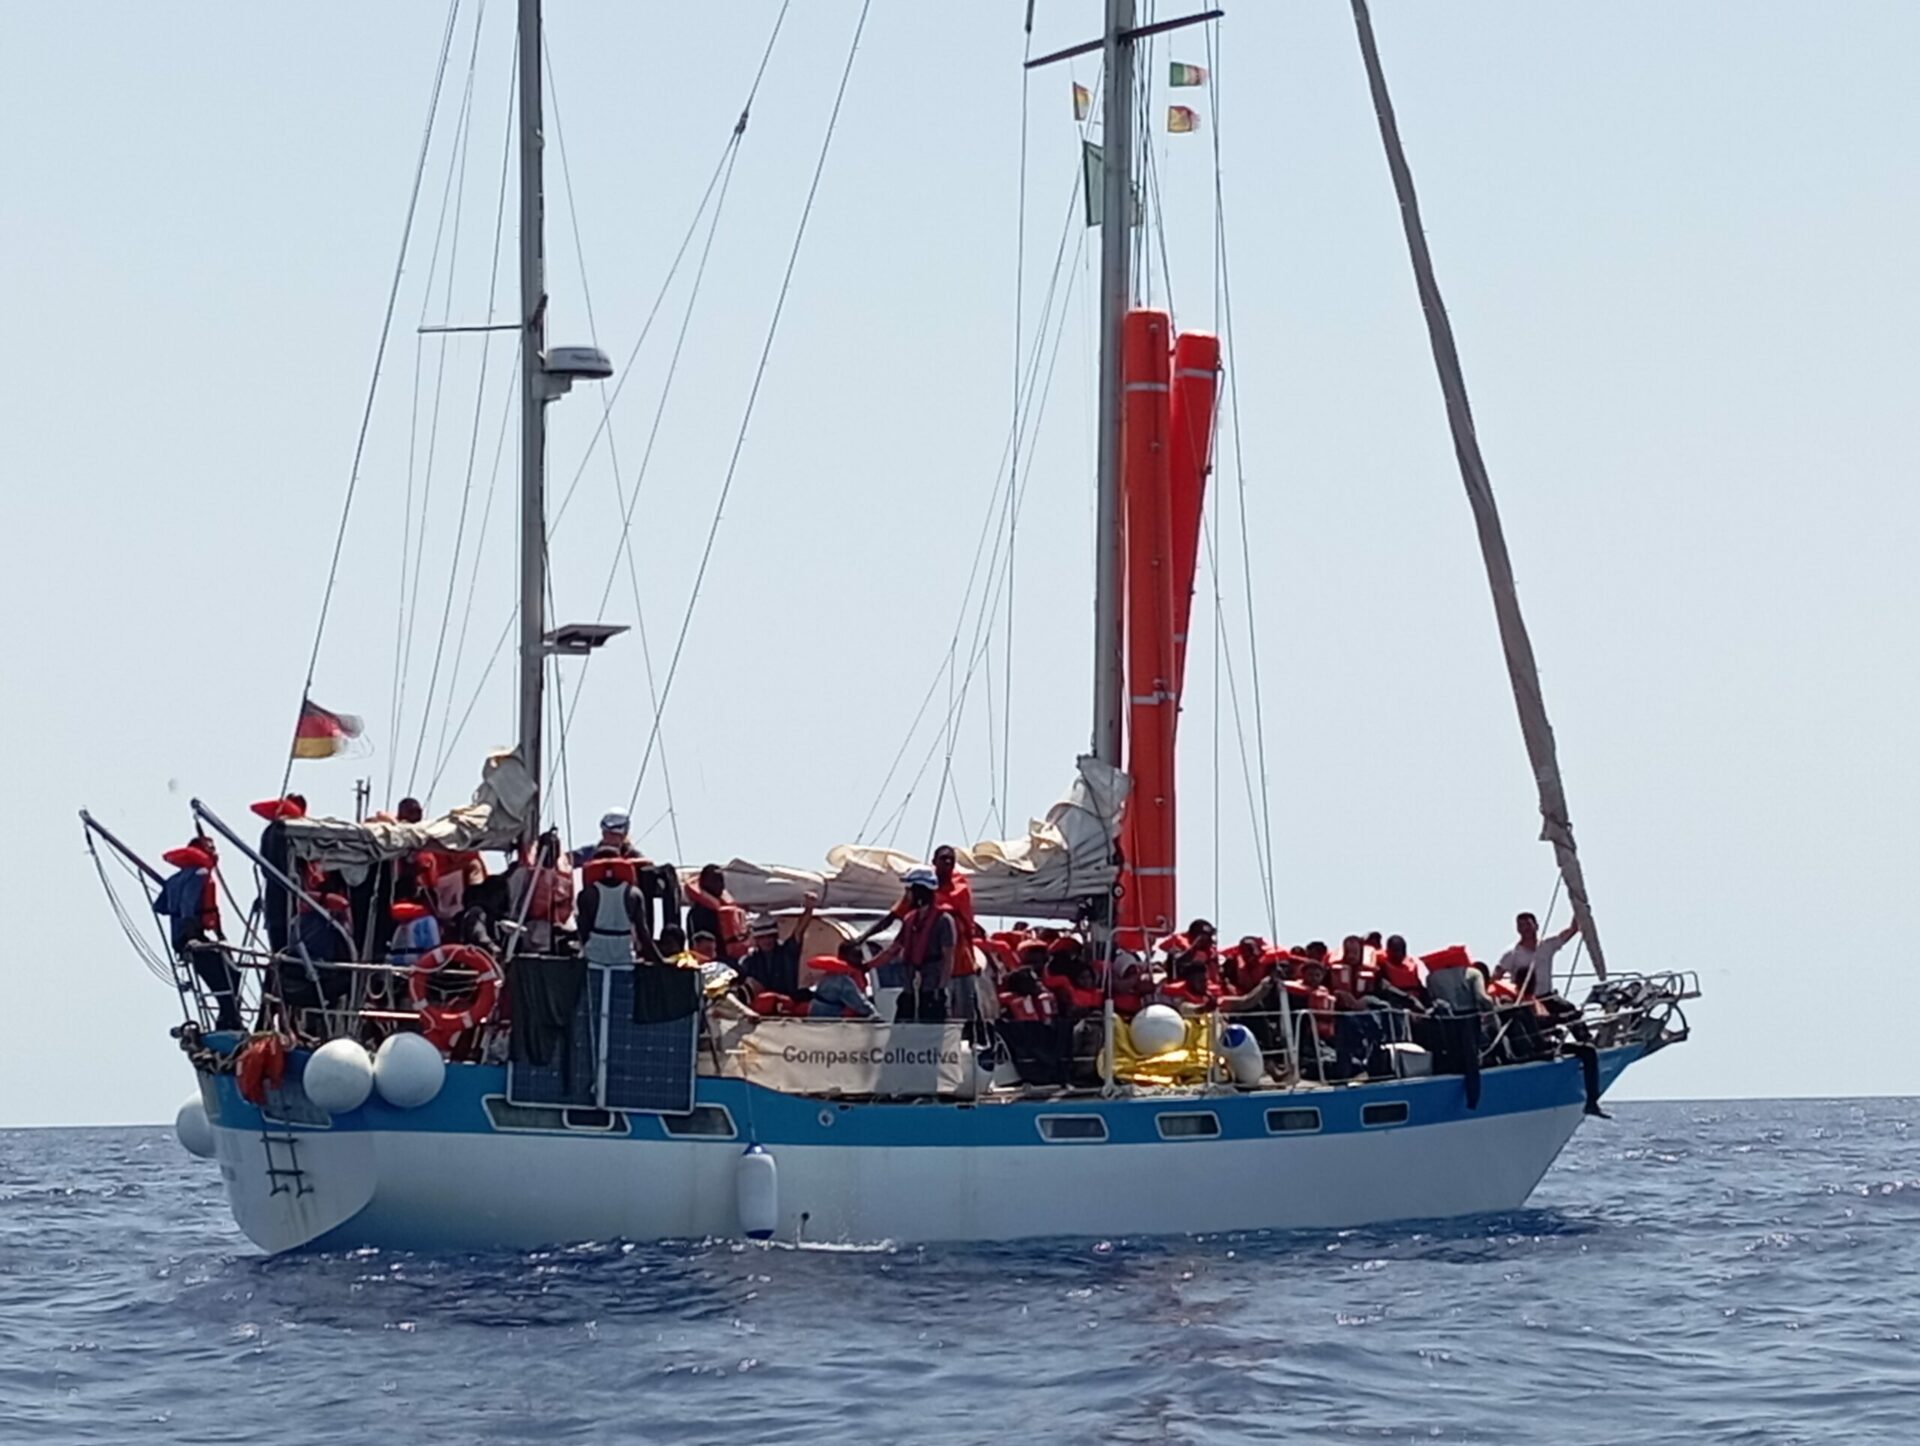 52 Menschen auf dem Mittelmeer von wendländischem Segelboot vor illegaler Rückführung bewahrt